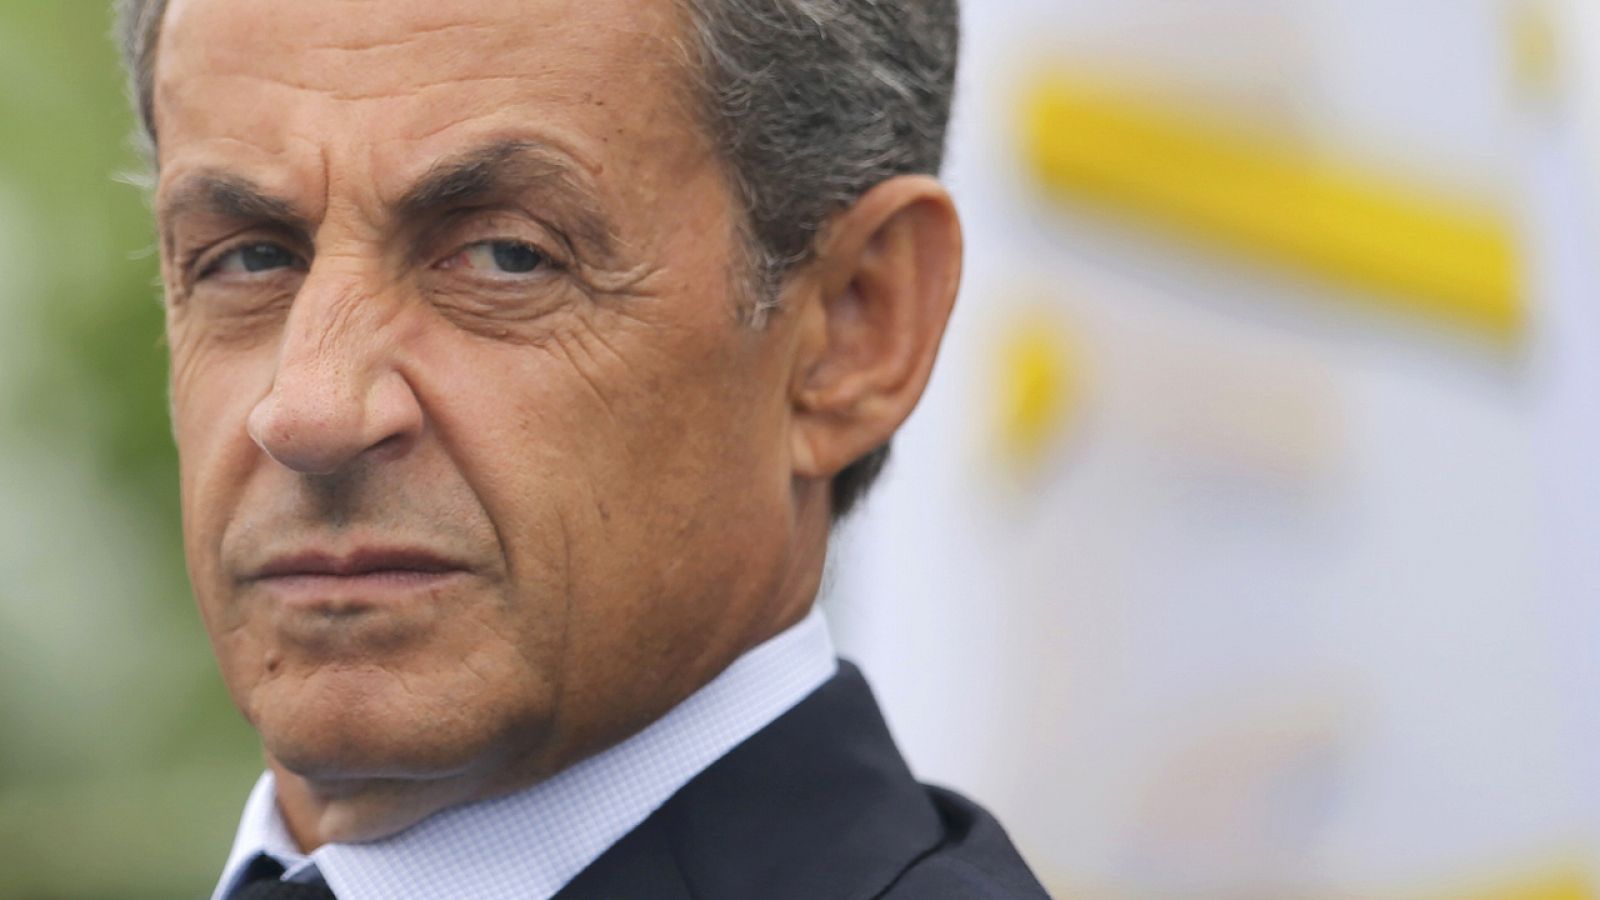 El ex presidente francés Nicolas Sarkozy fotografiado en la concentración de La Baule, Francia